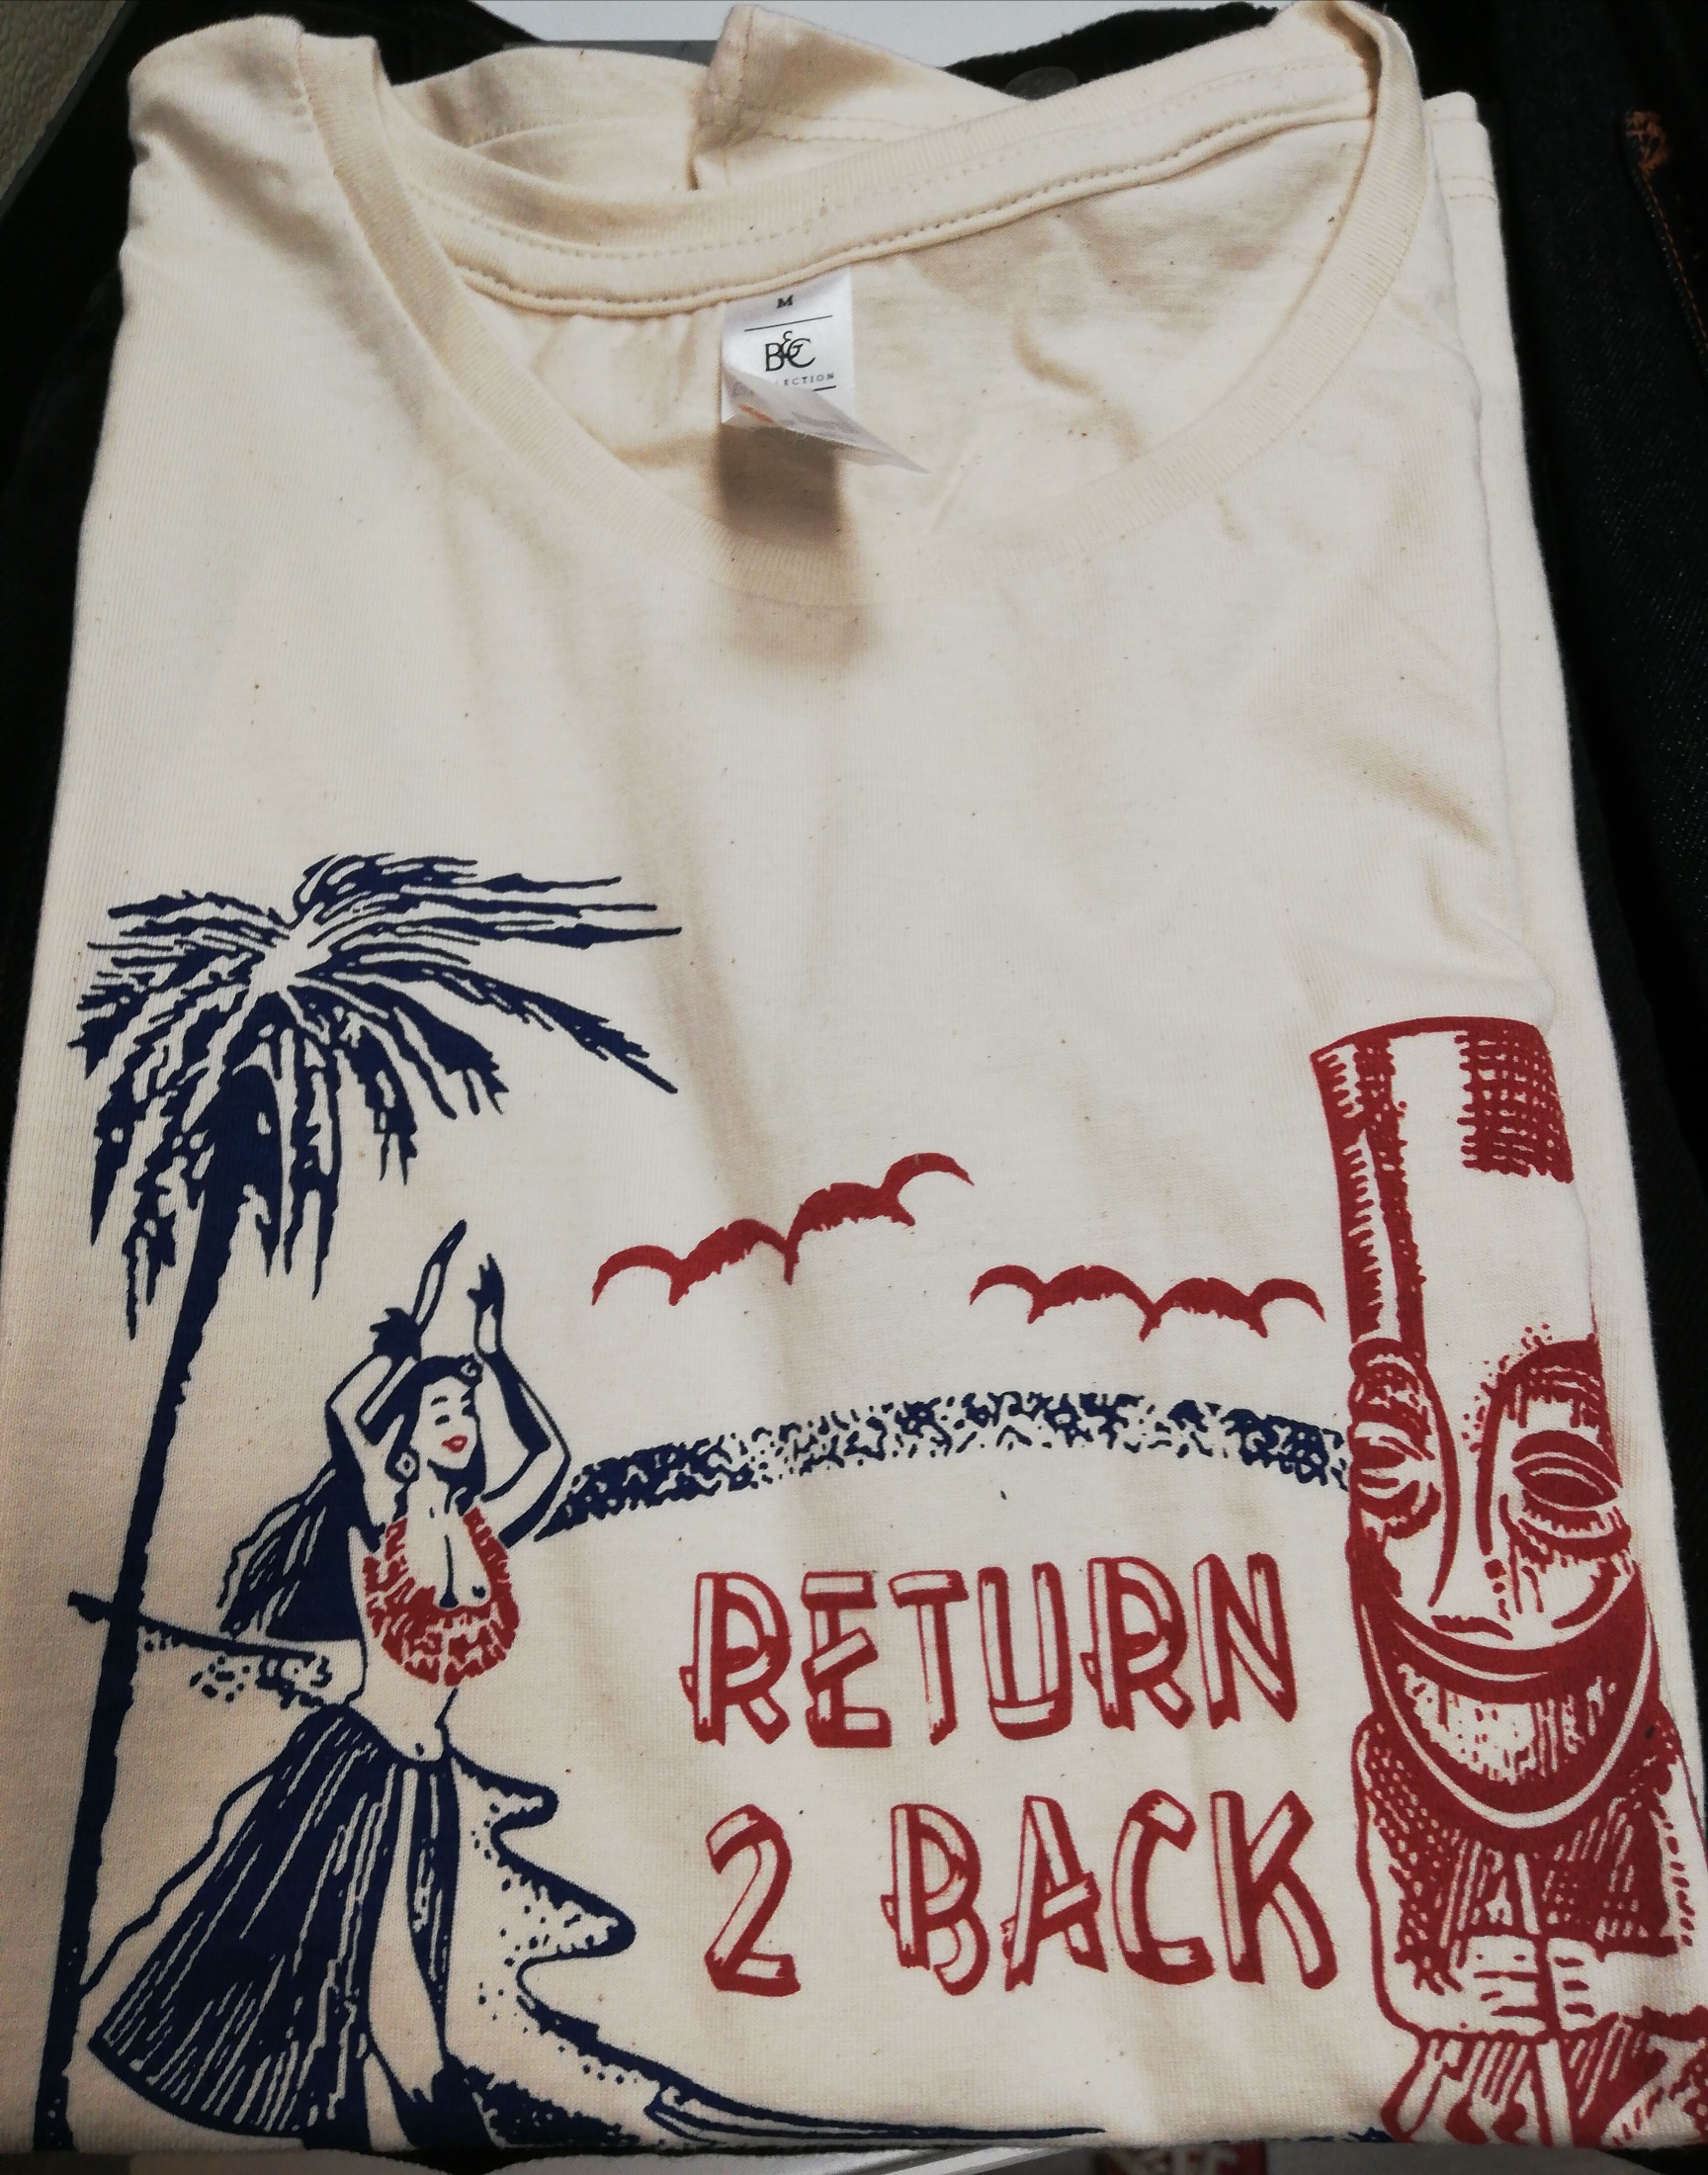 Return 2 Back Men T-Shirt 2021